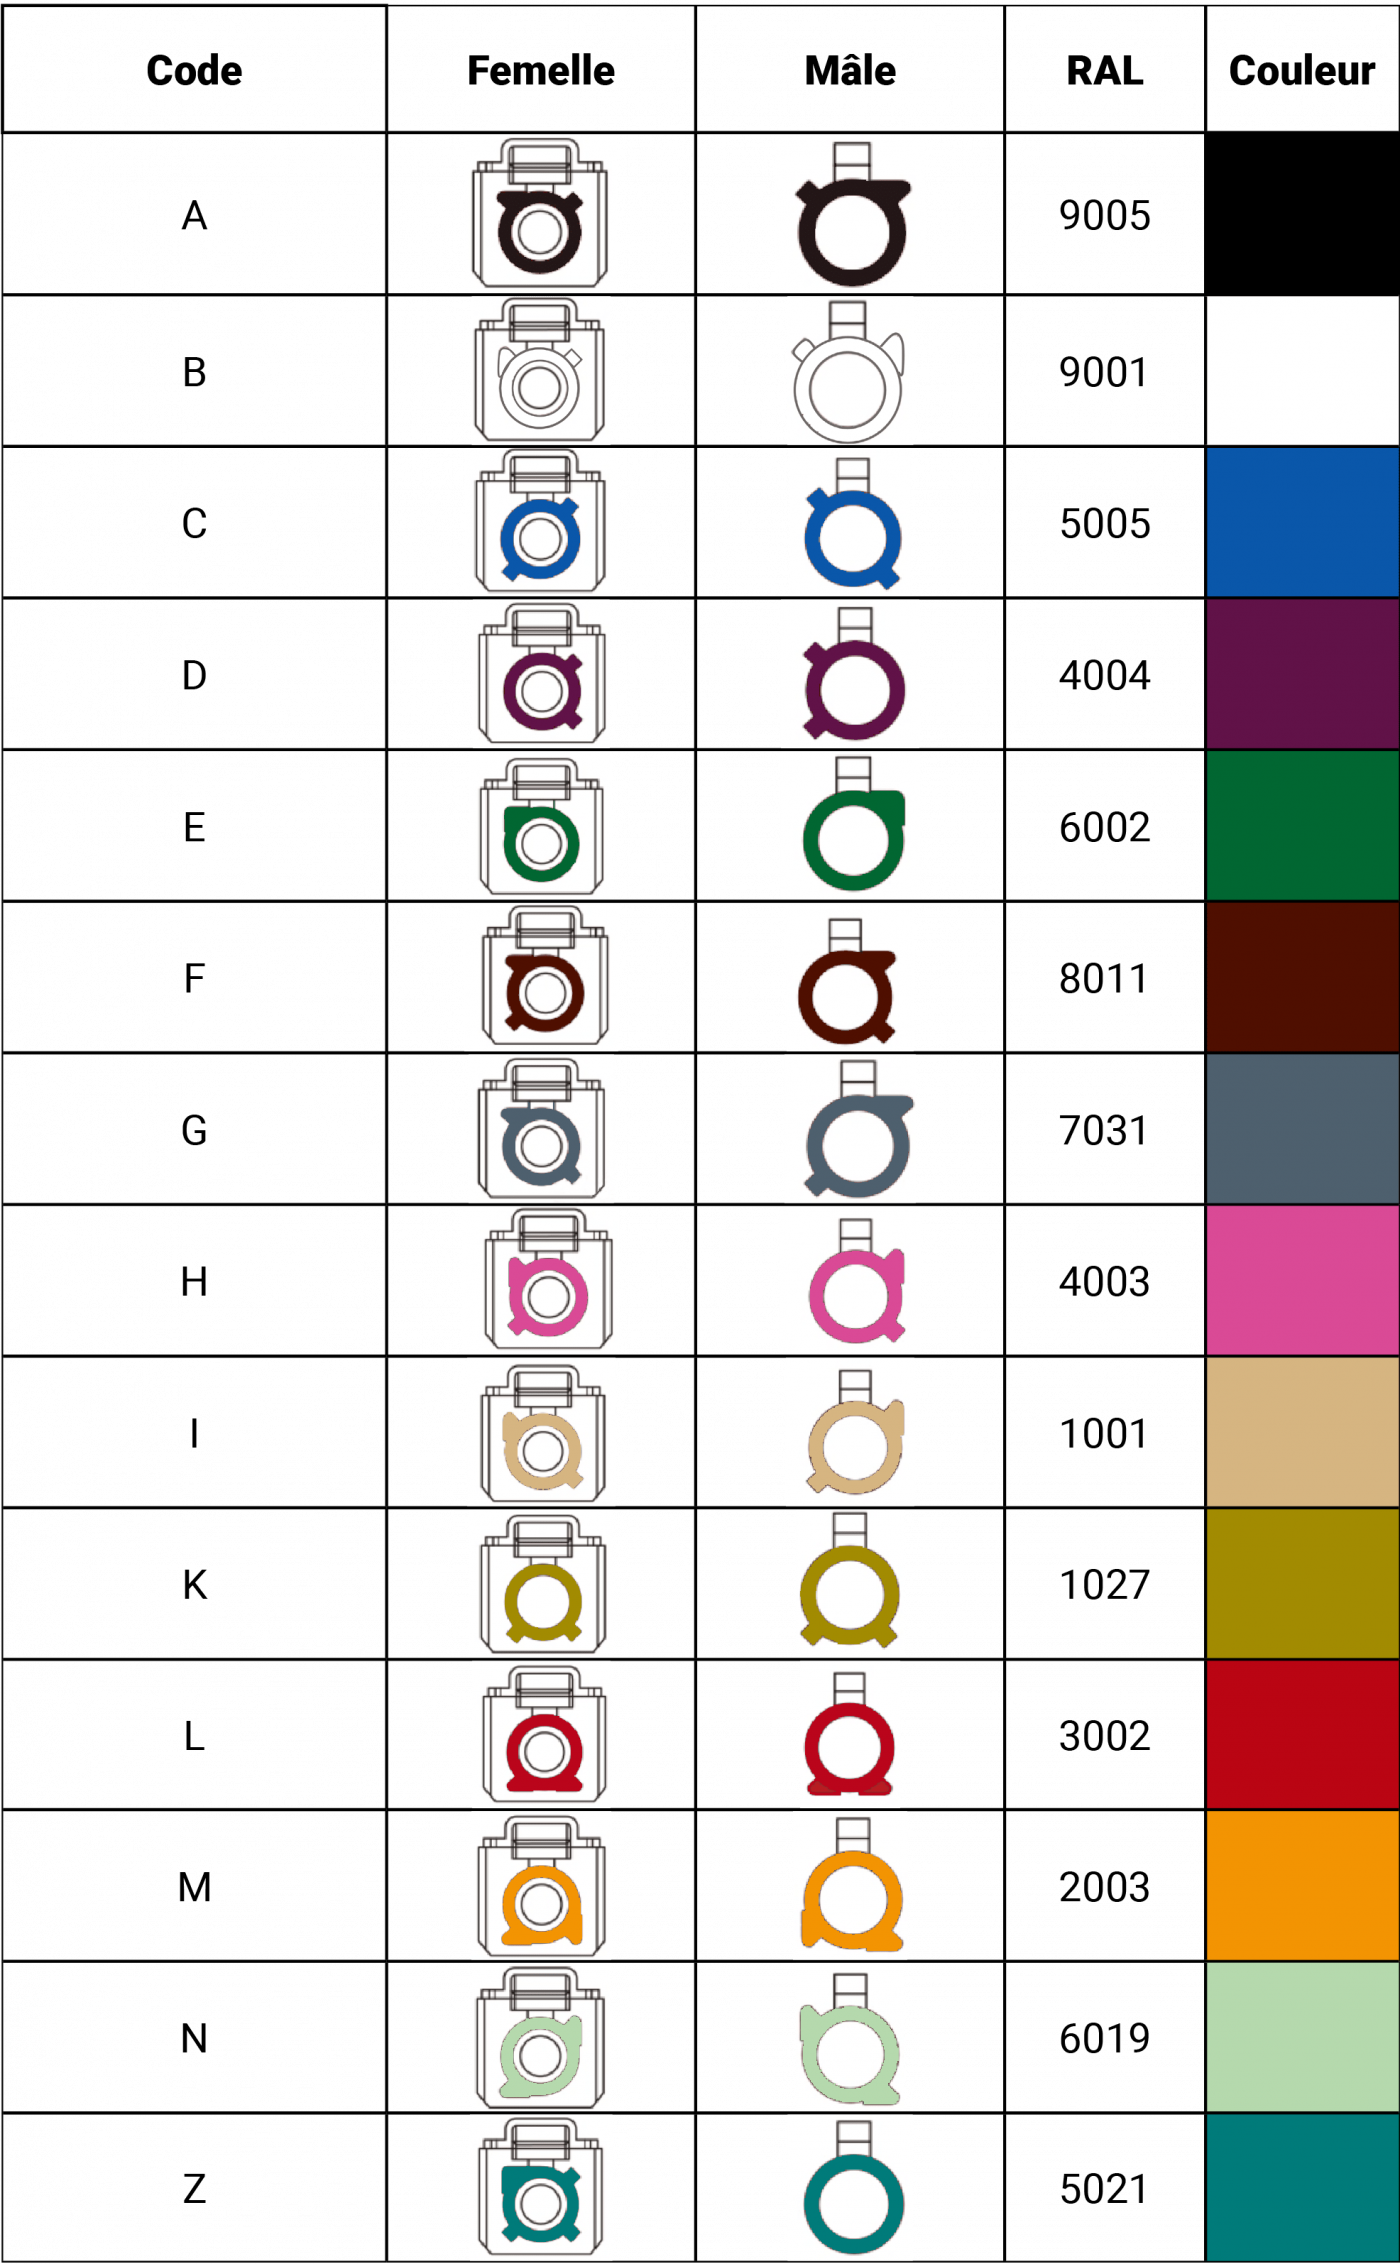 Tableau comparatif des différents connecteurs FAKRA